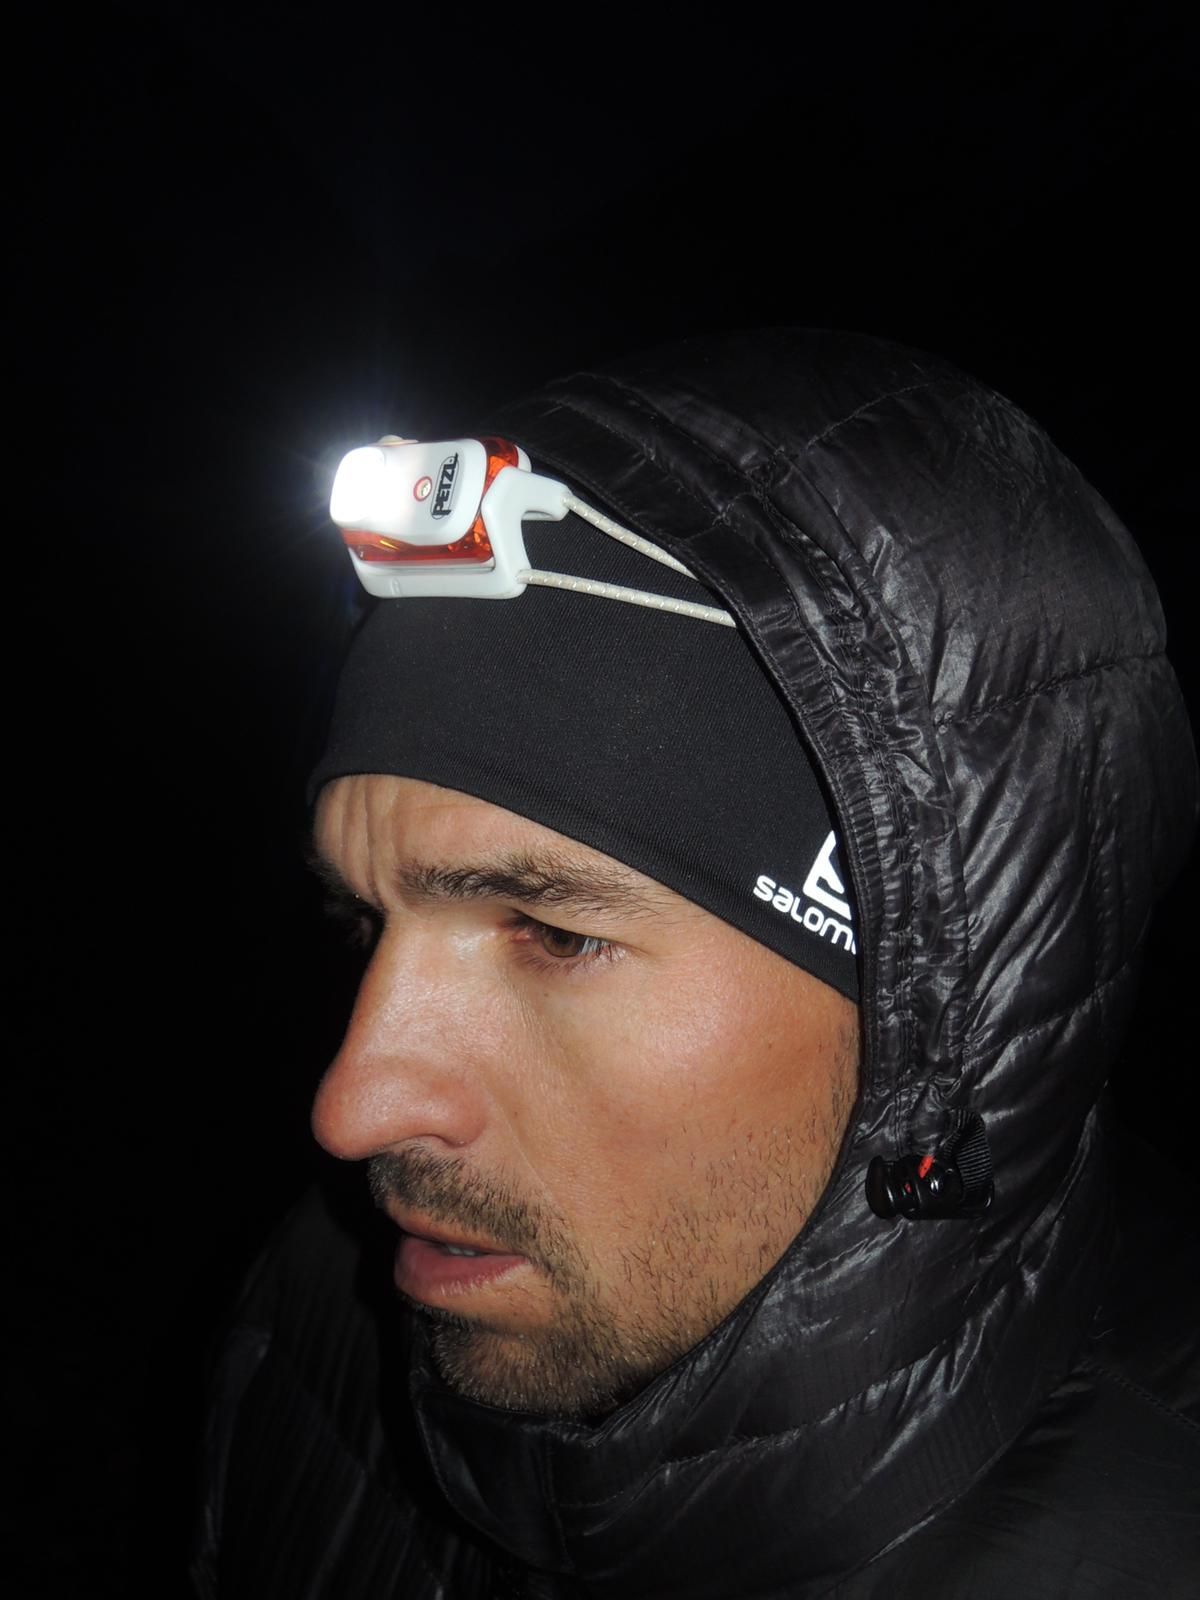 Horolezec Tomáš Petreček leze na K2 (červenec 2019)